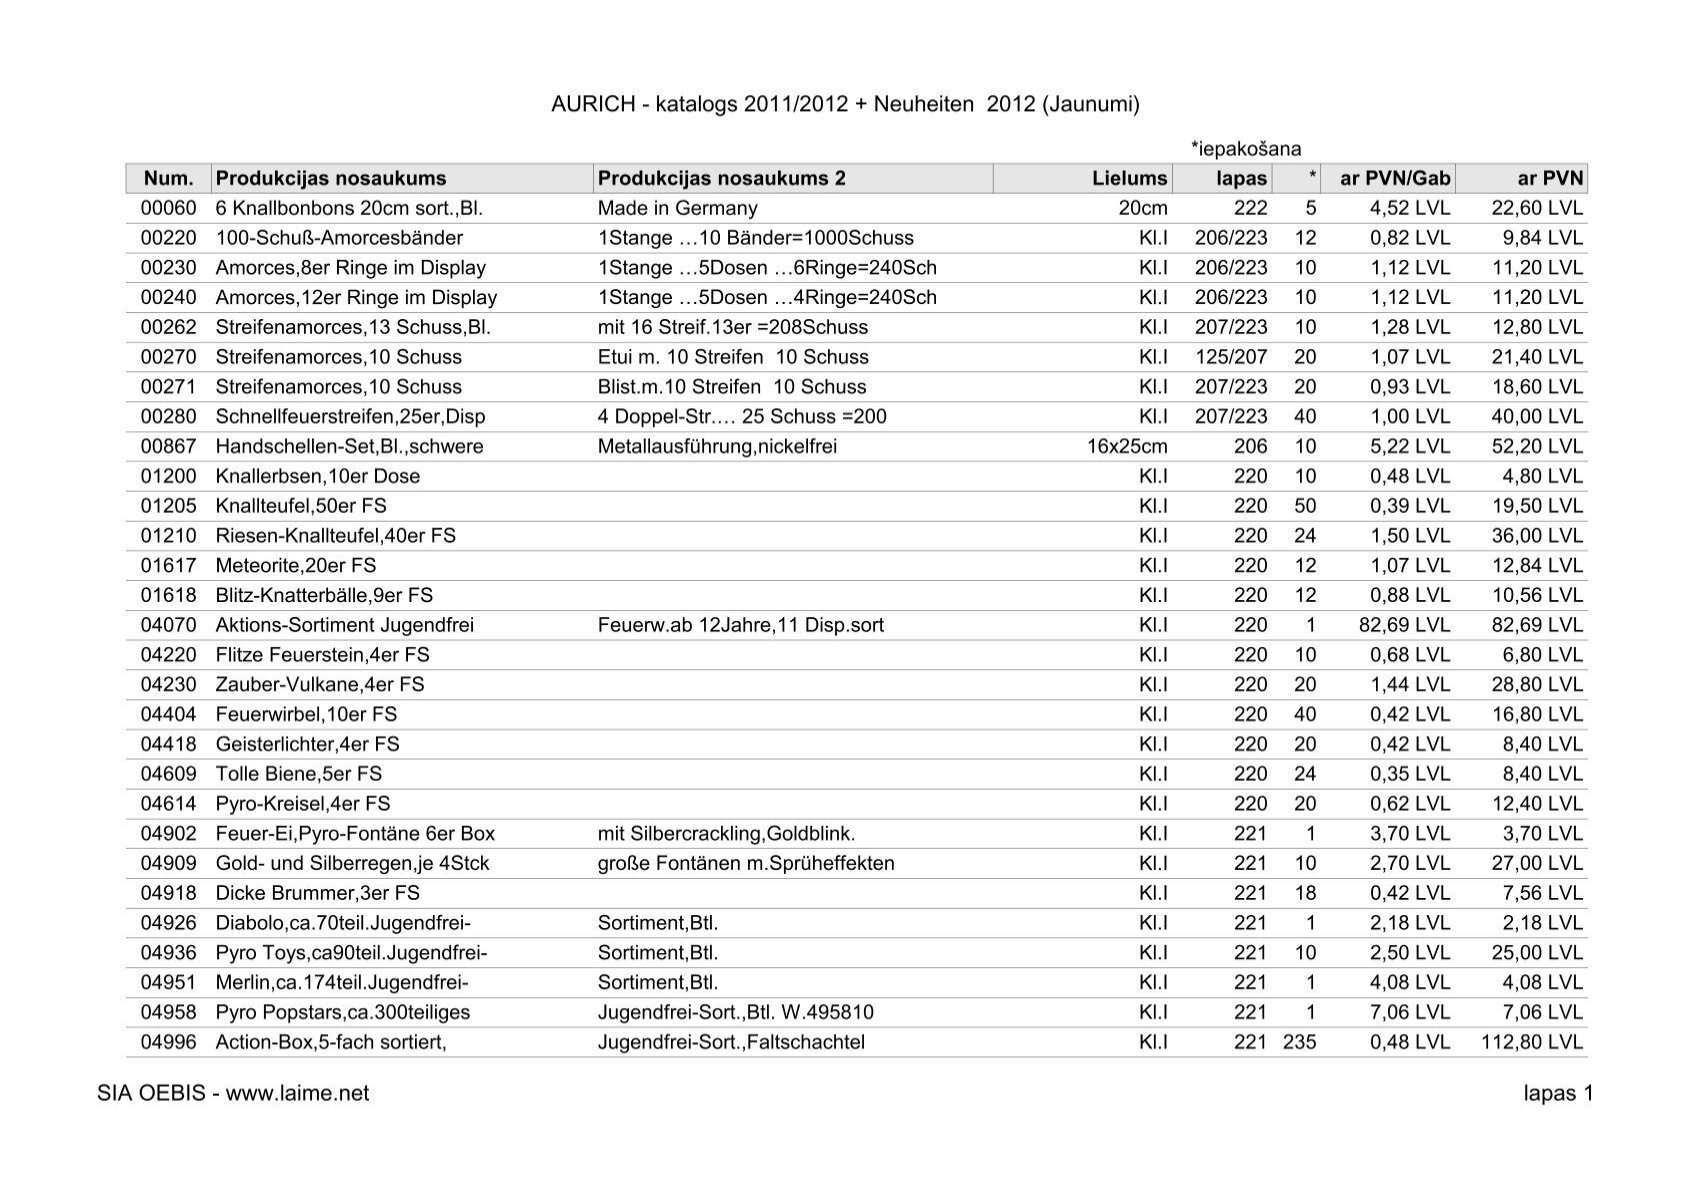 AURICH - katalogs 2011/2012 + Neuheiten 2012 (Jaunumi  - LAIME